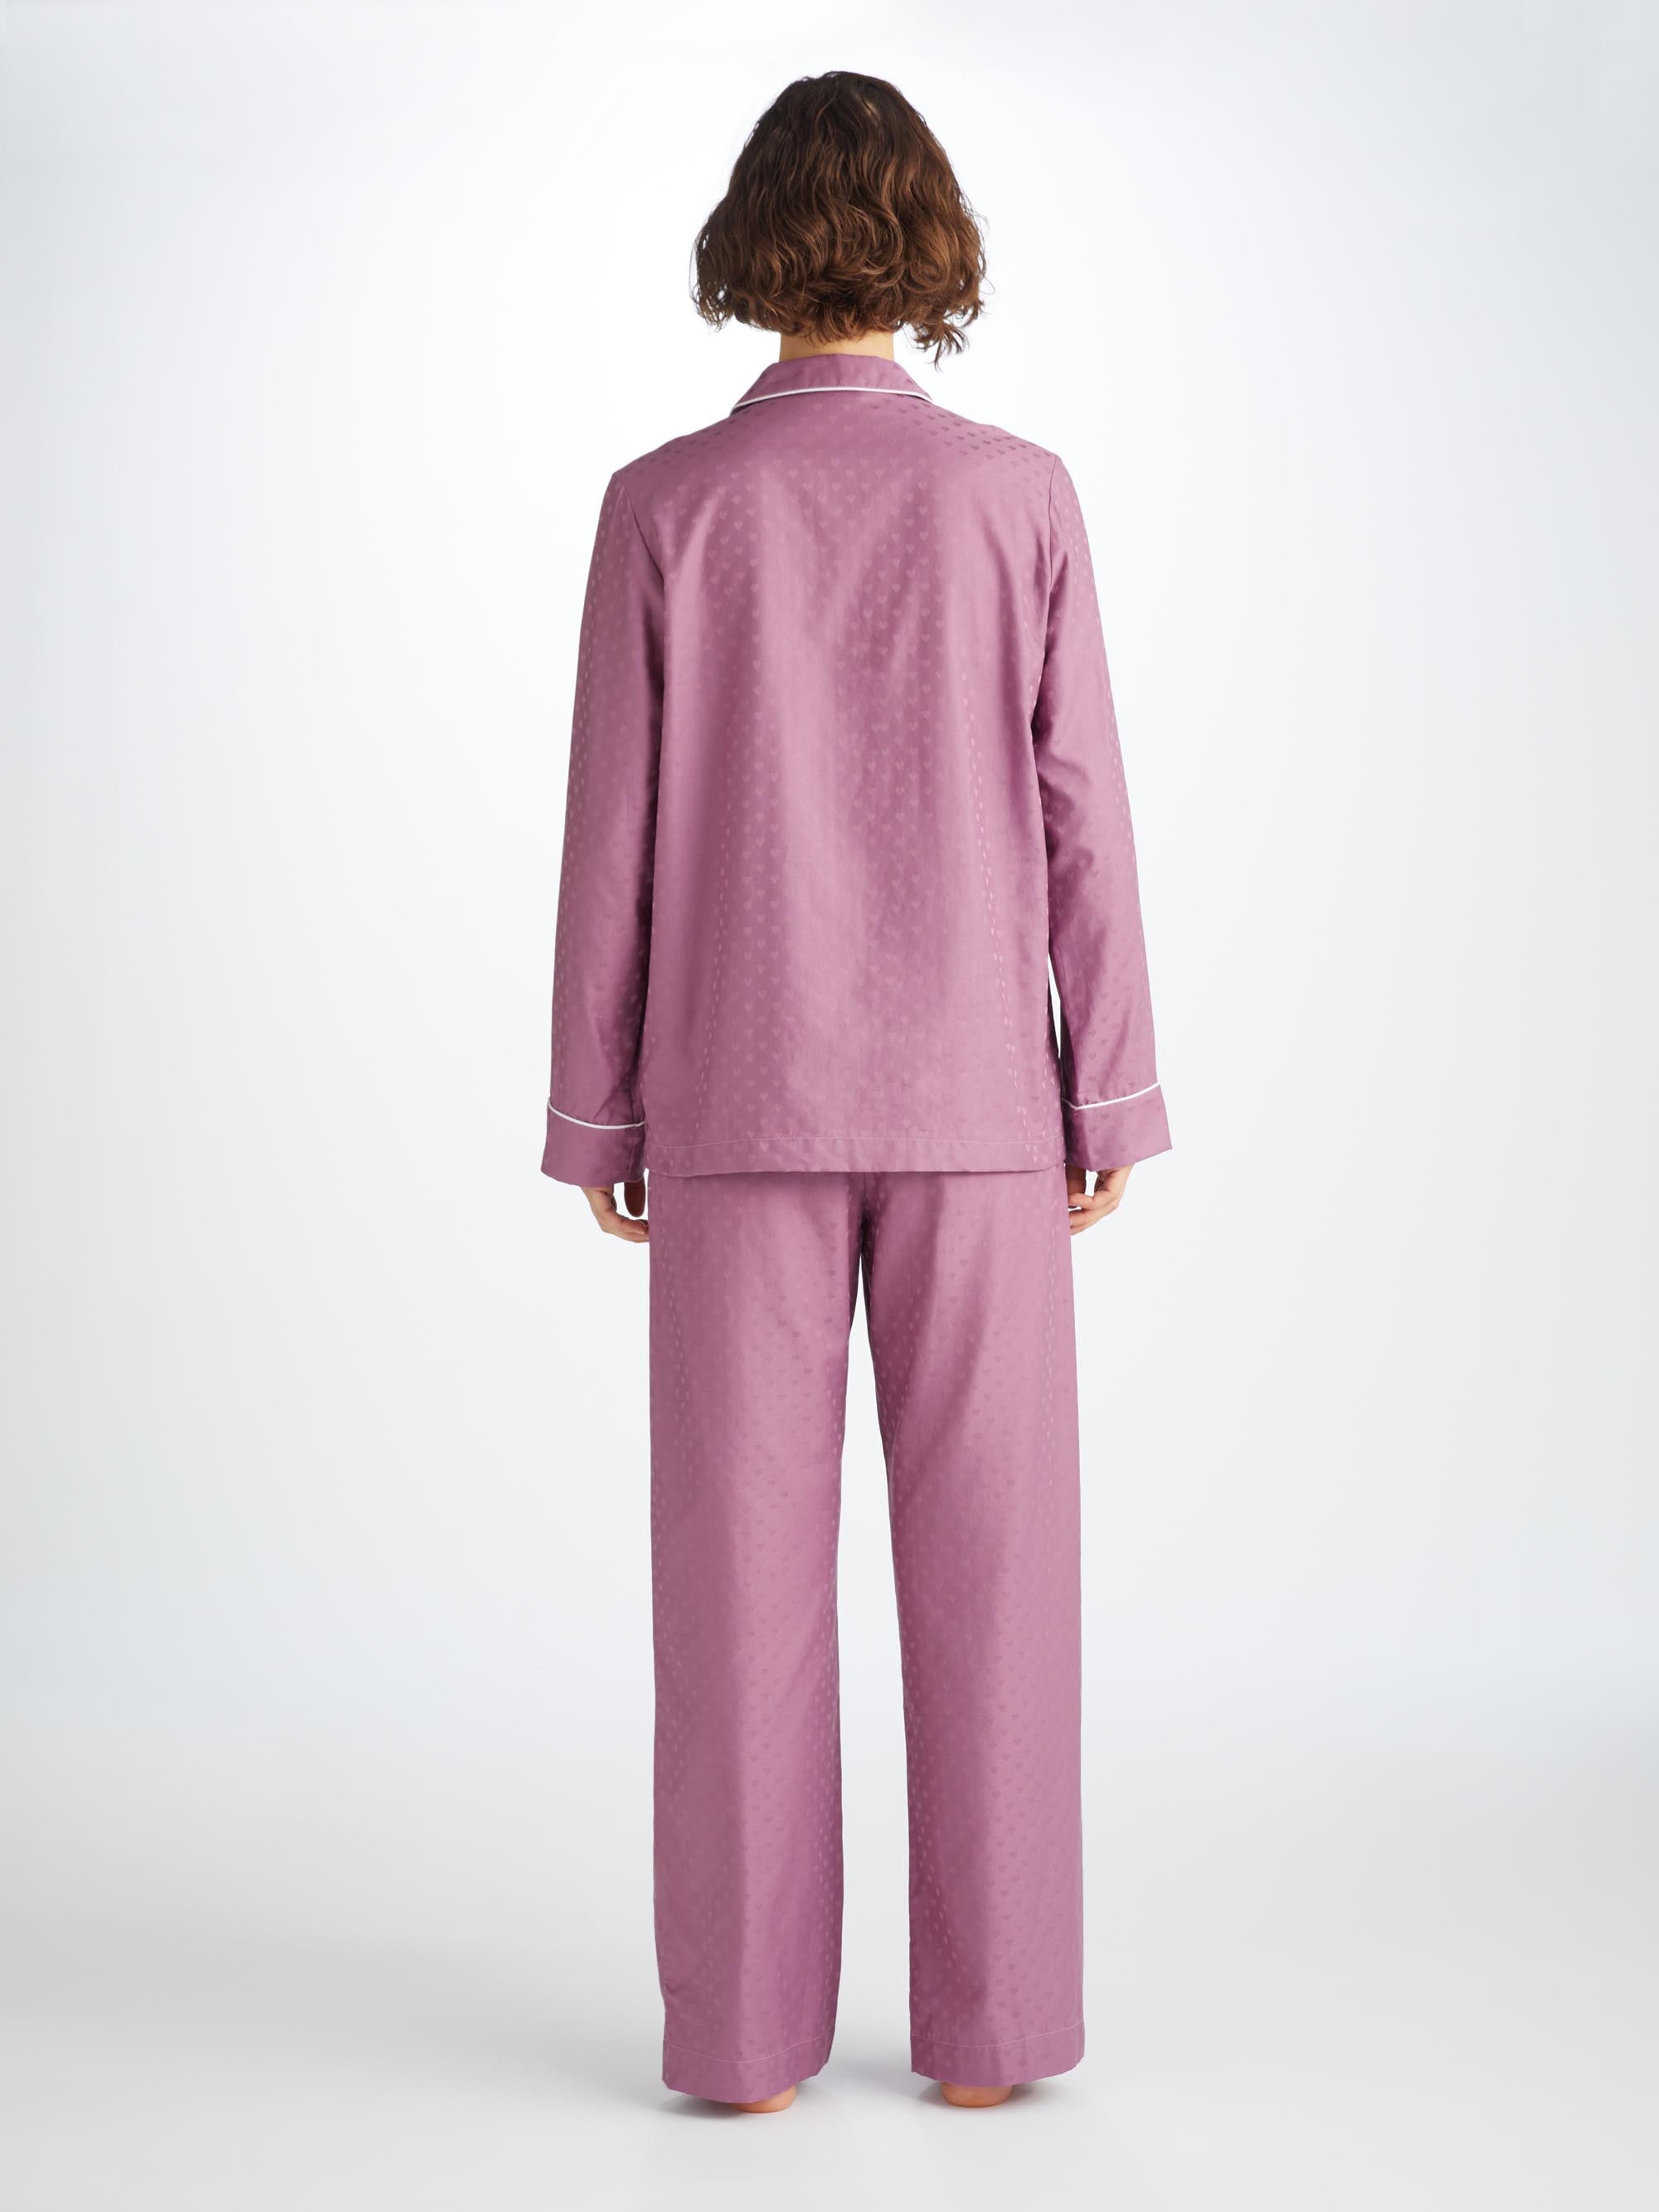 Women's Pajamas Kate 10 Cotton Jacquard Purple